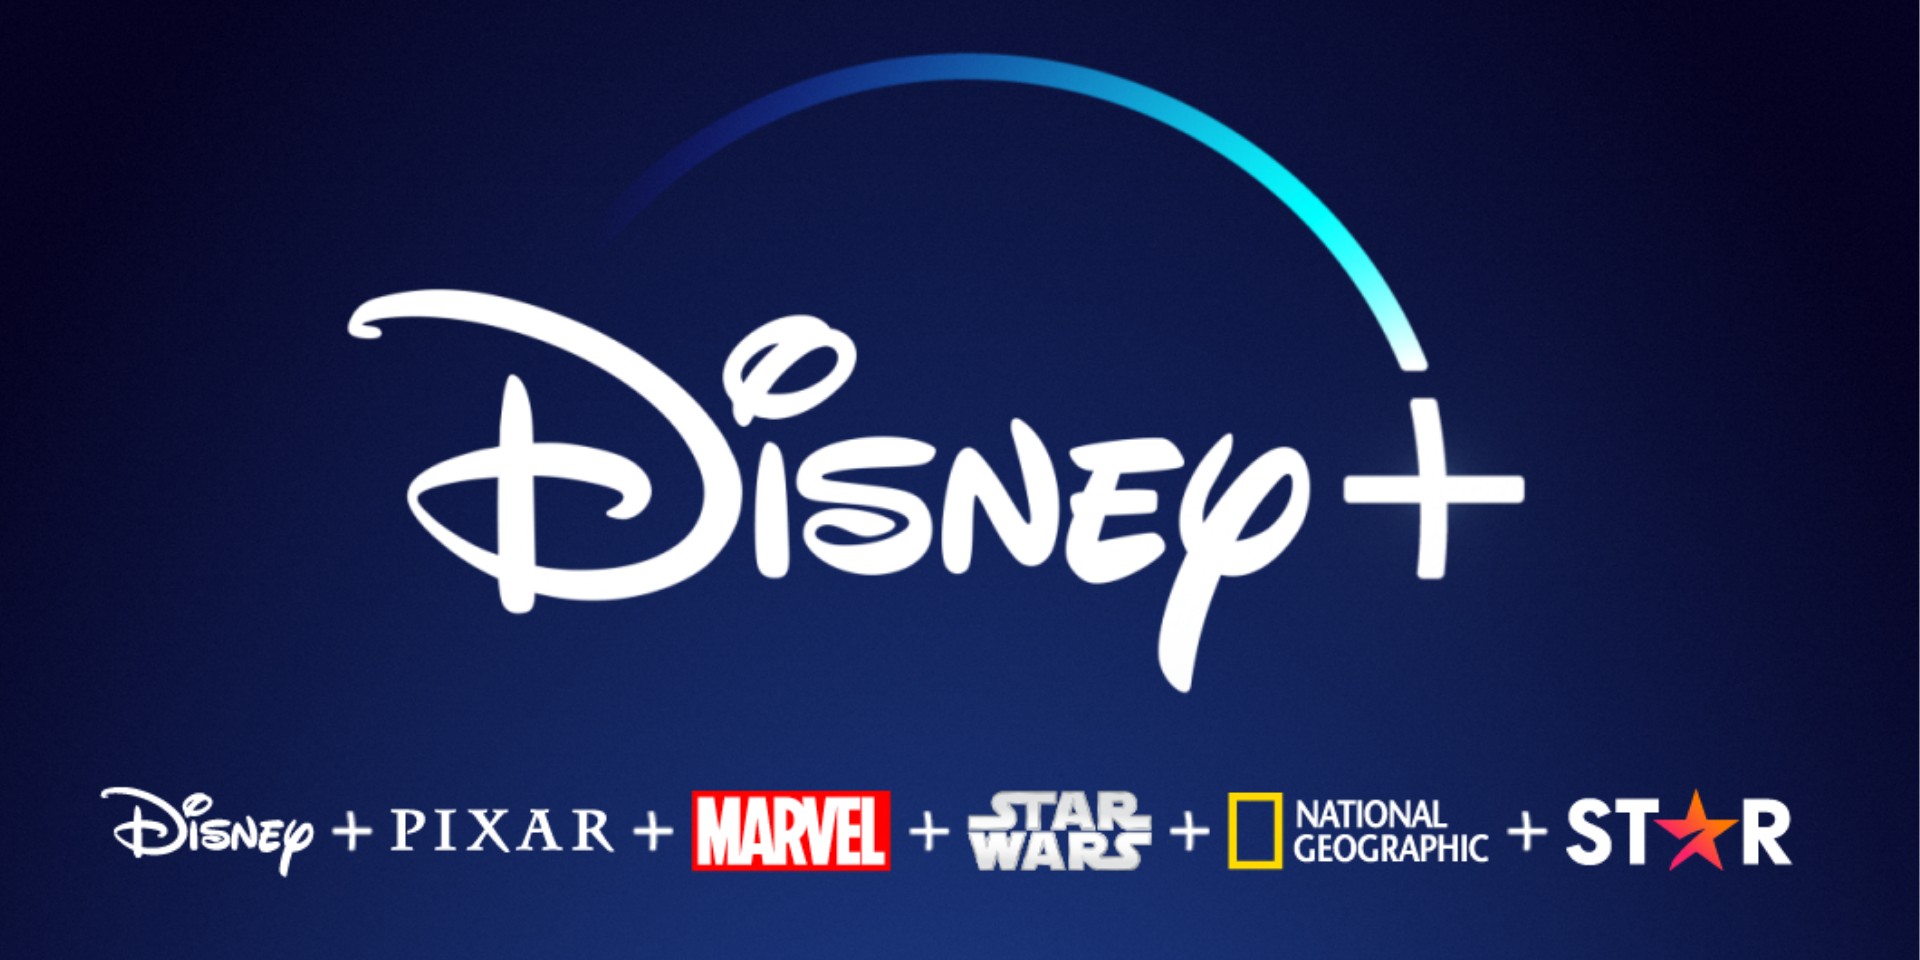 Disney+ is coming to South Korea, Hong Kong, and Taiwan this November